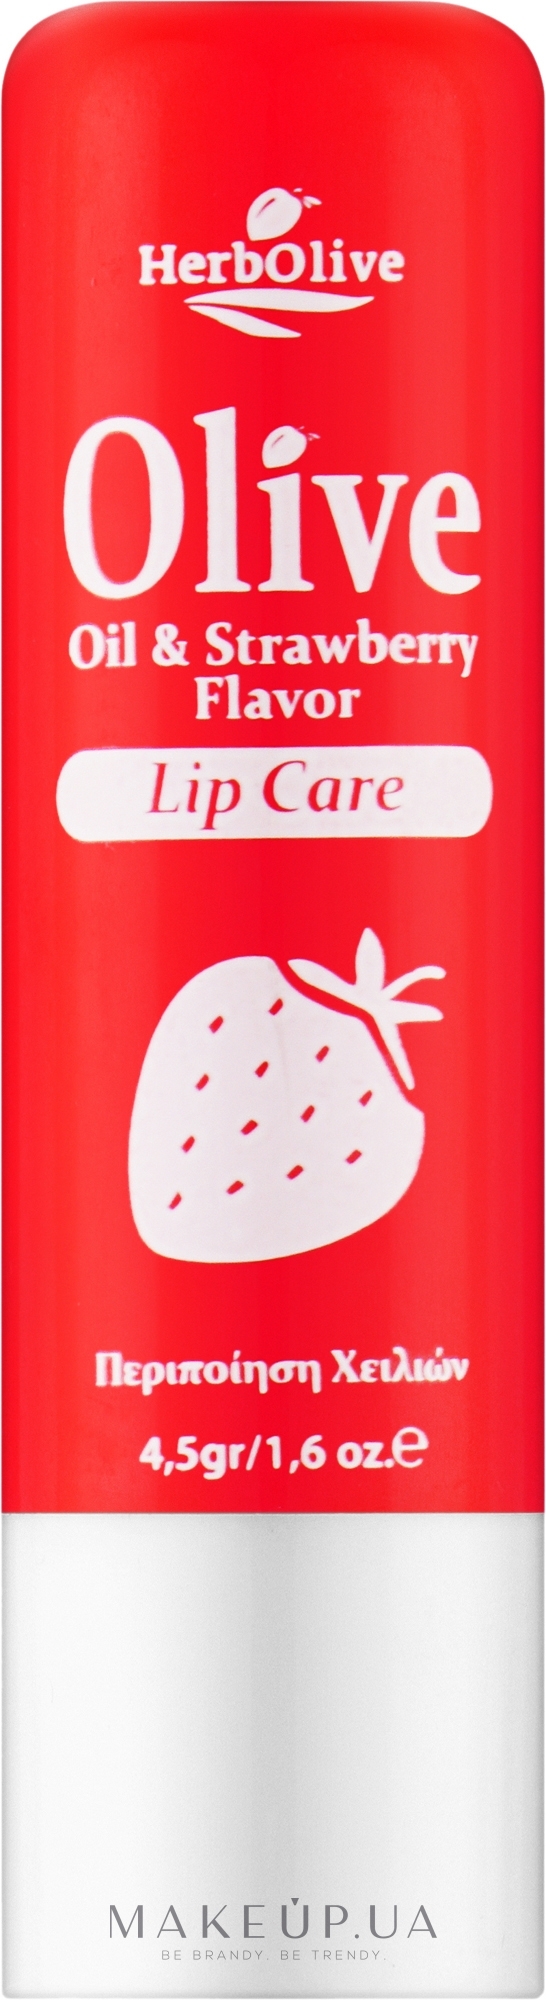 Бальзам для губ с клубникой - Madis HerbOlive Lip Care — фото 4.5g